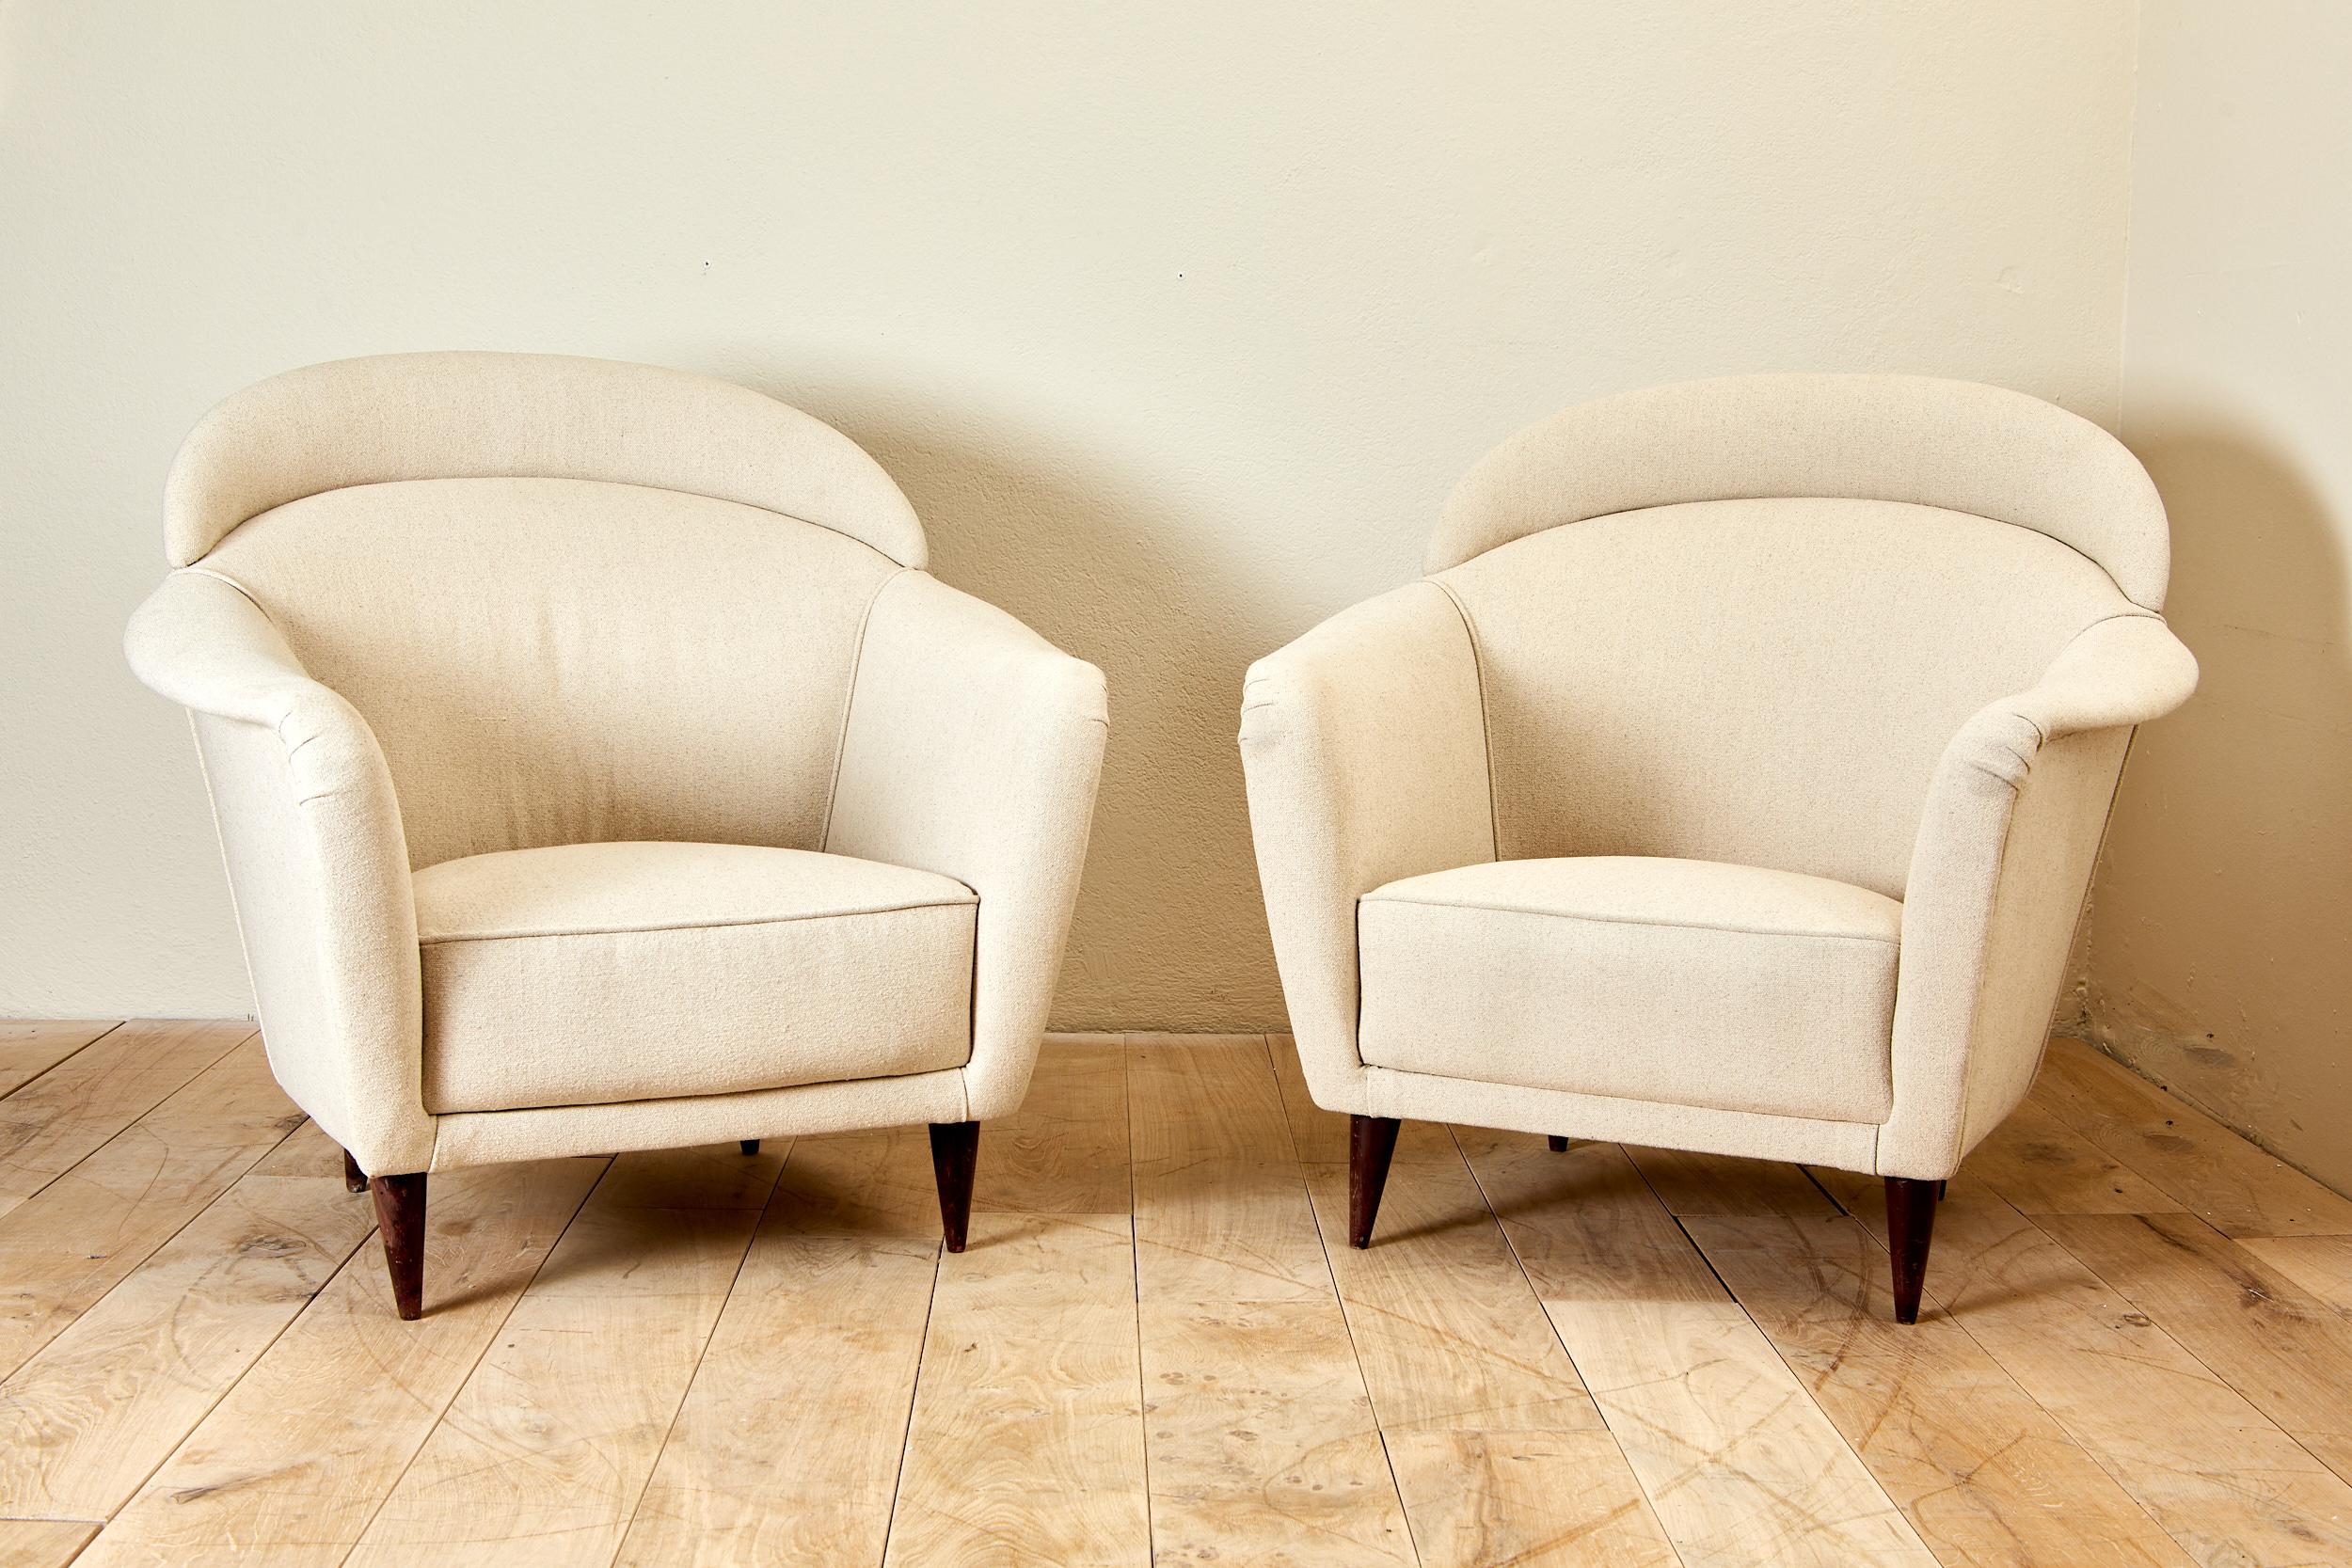 Paar Sessel, 
Holz und Baumwolle, 
Um 1970, Italien.
Höhe 85 cm, Sitzhöhe 35 cm, Breite 90 cm, Tiefe 85 cm.